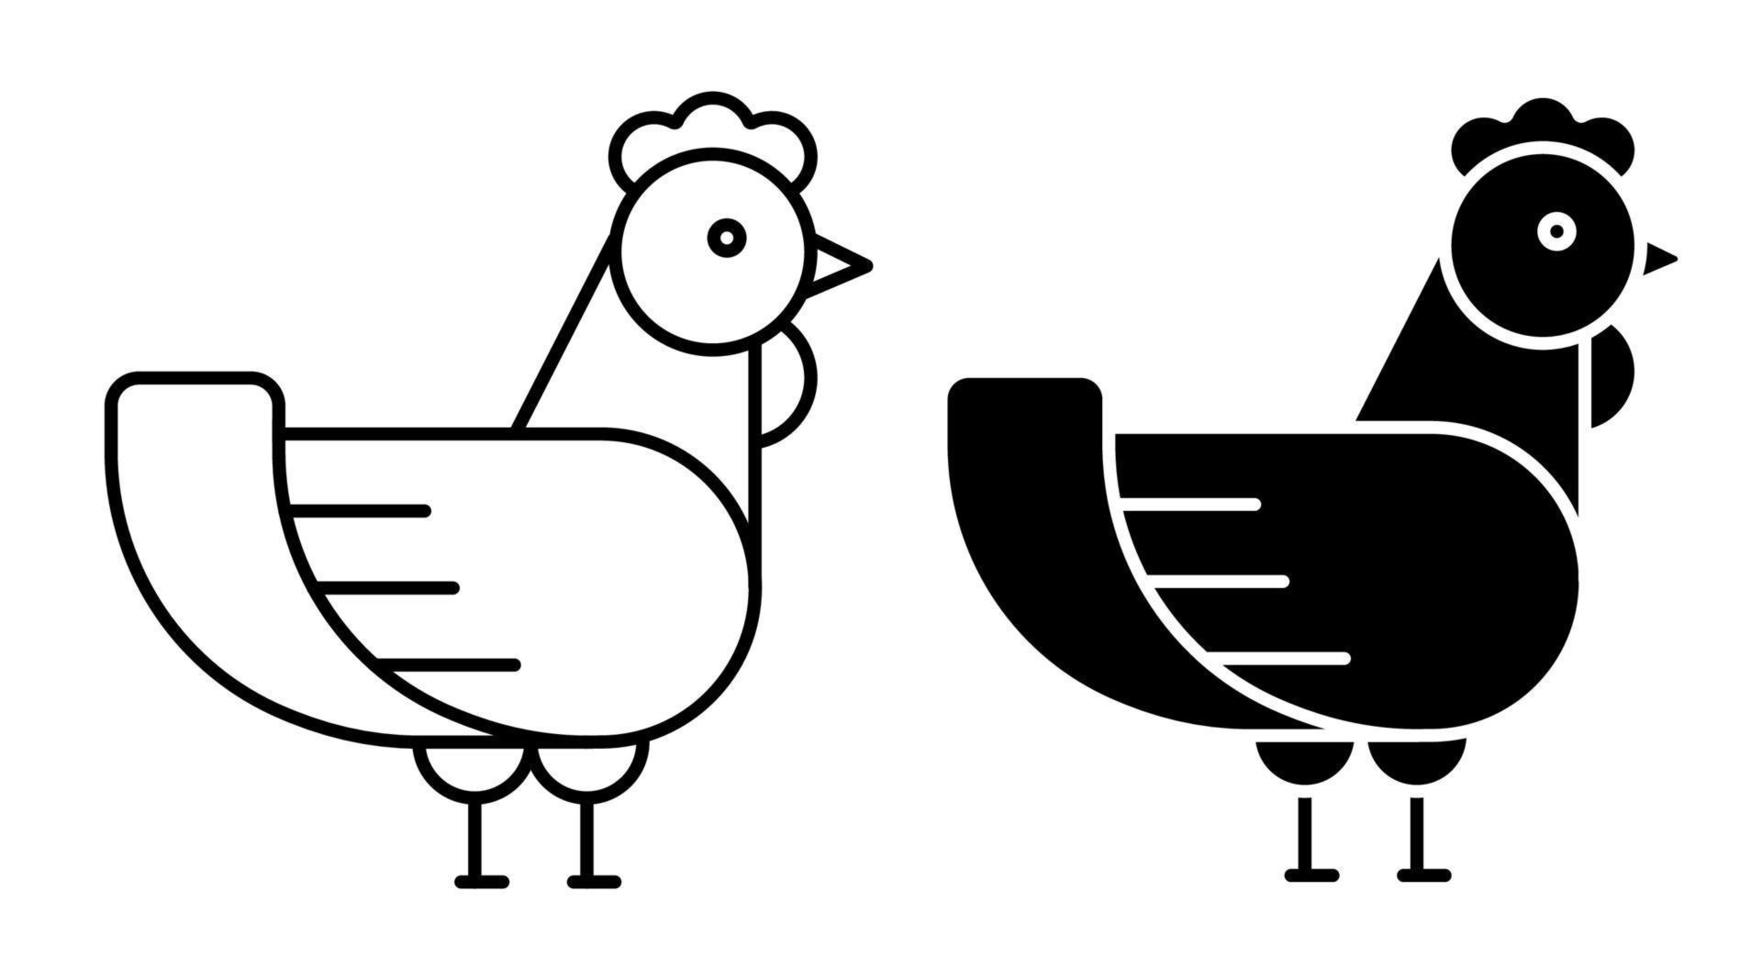 icona lineare. pollo casalingo. uccelli da fattoria che depongono le uova. semplice vettore in bianco e nero isolato su sfondo bianco